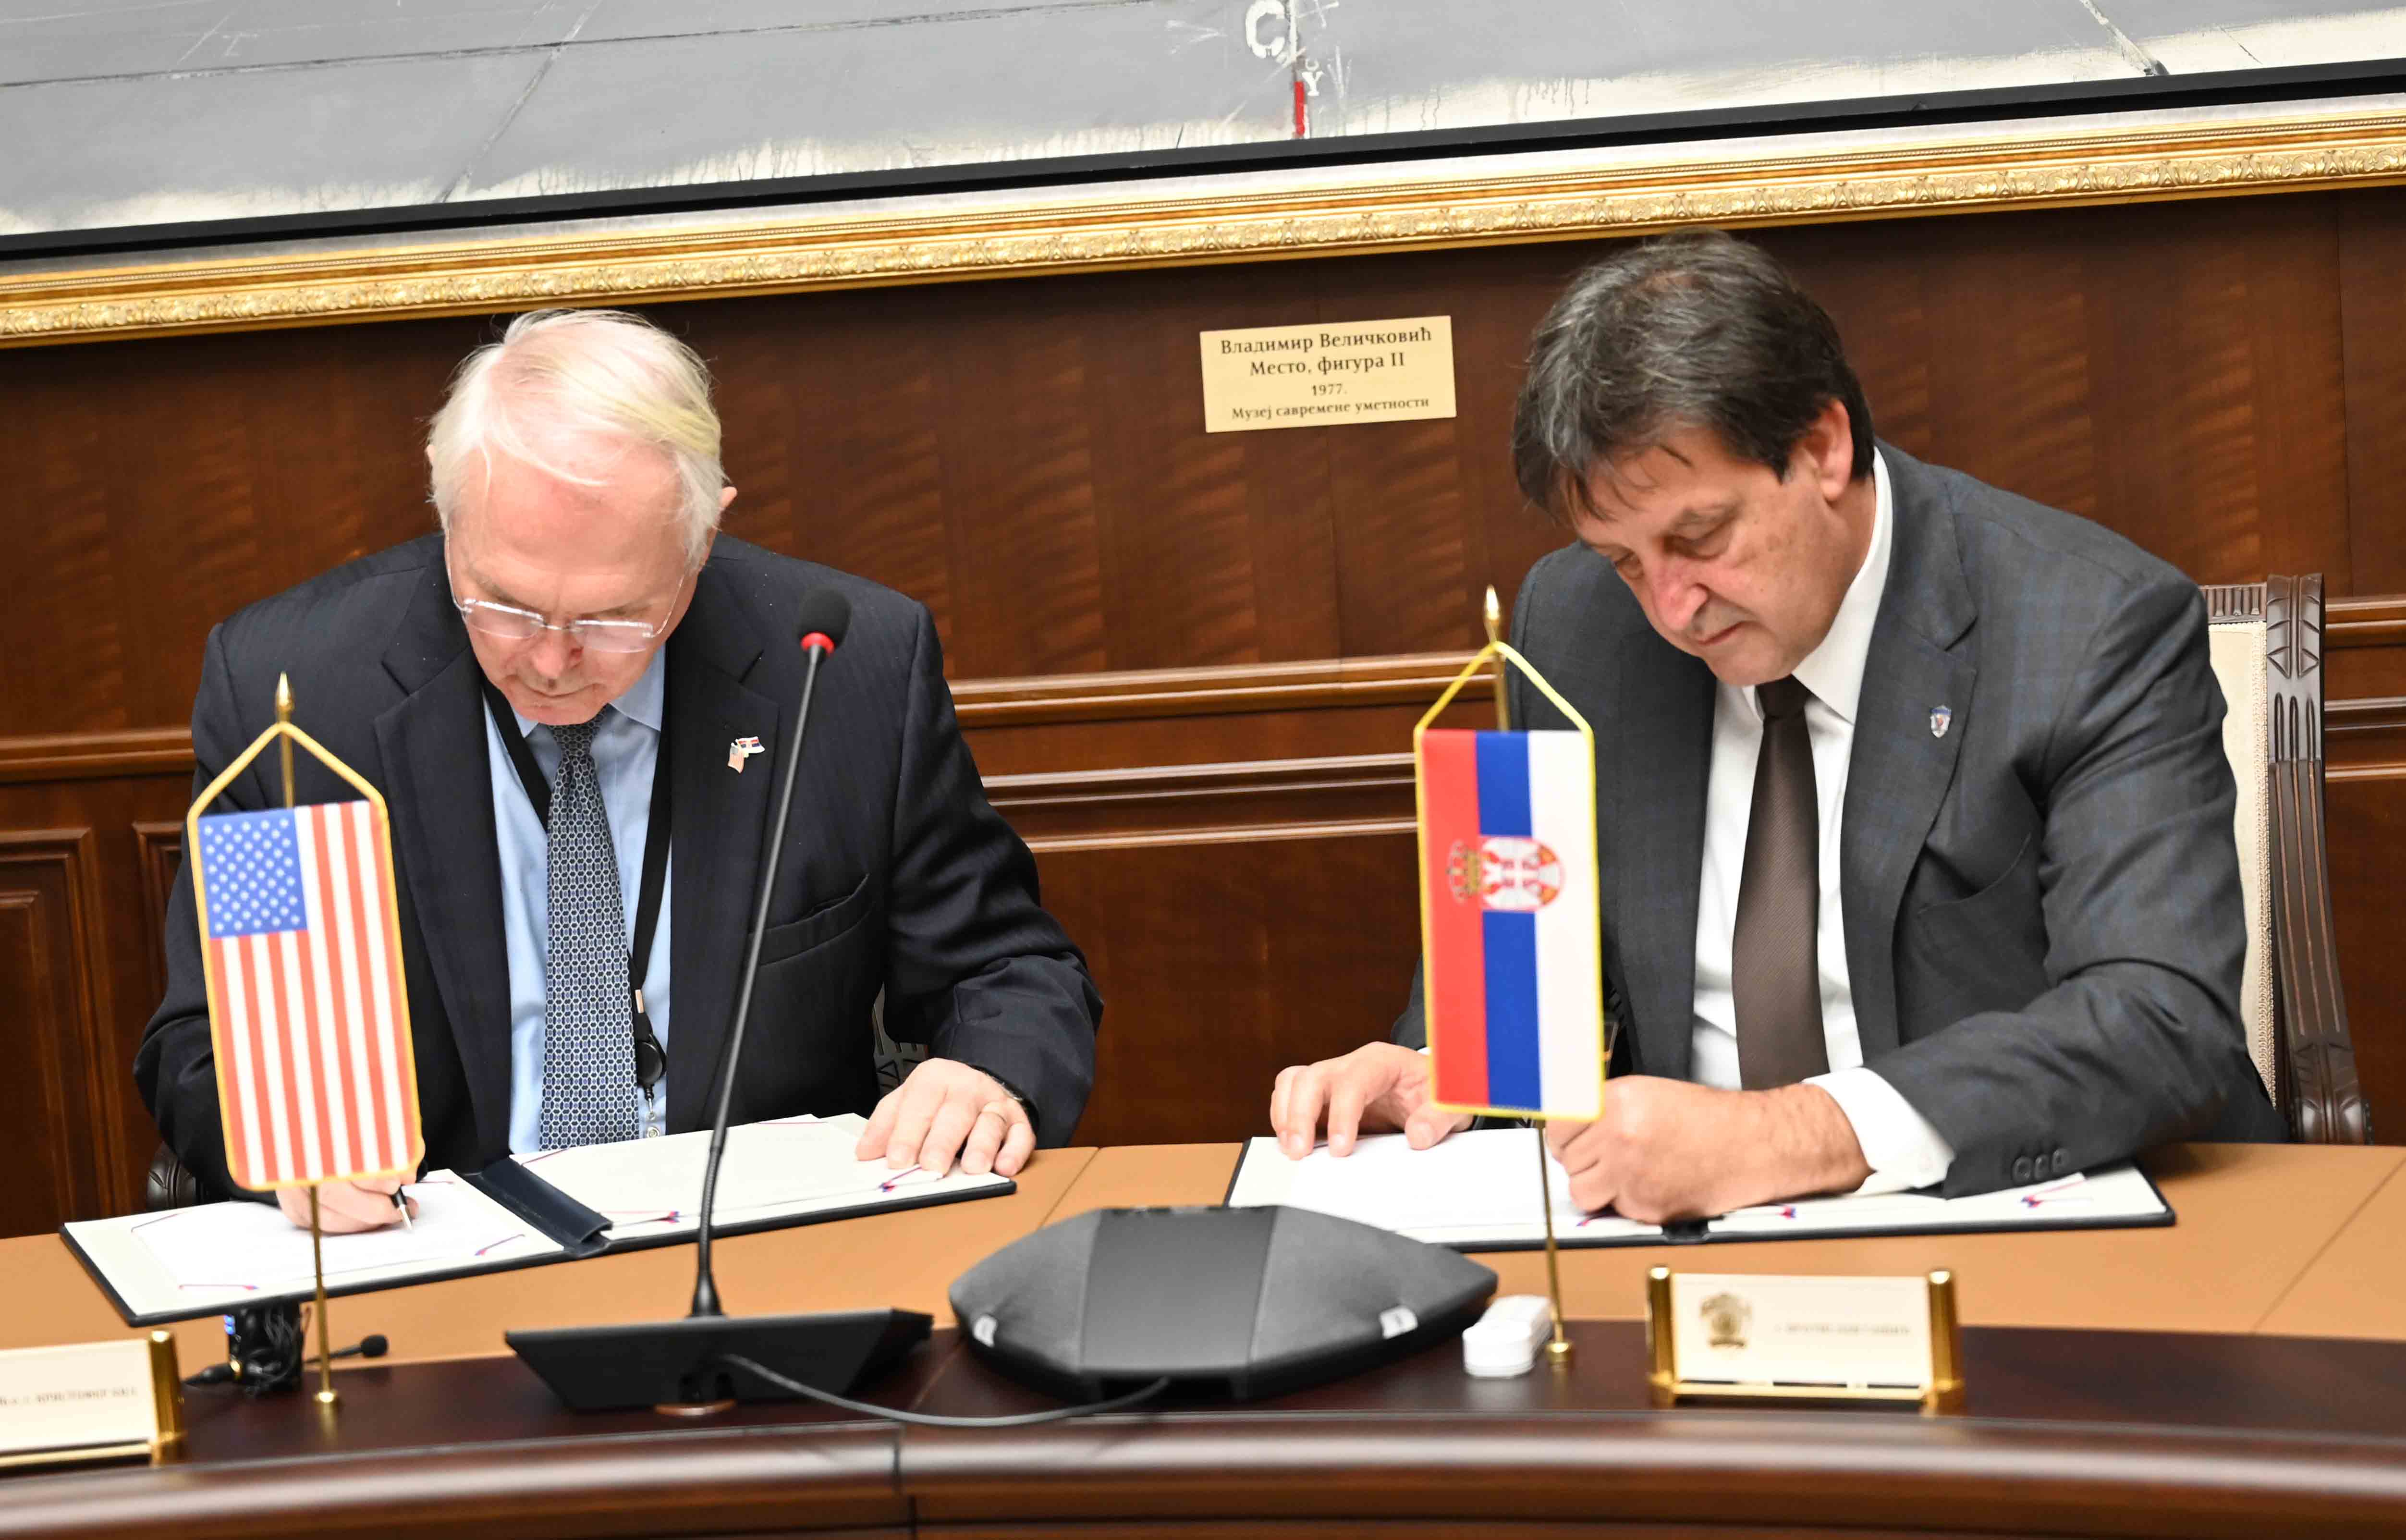 Potpisan Ugovor o donaciji za opremanje Nastavnog centra „Mitrovo polјe“ na Goču